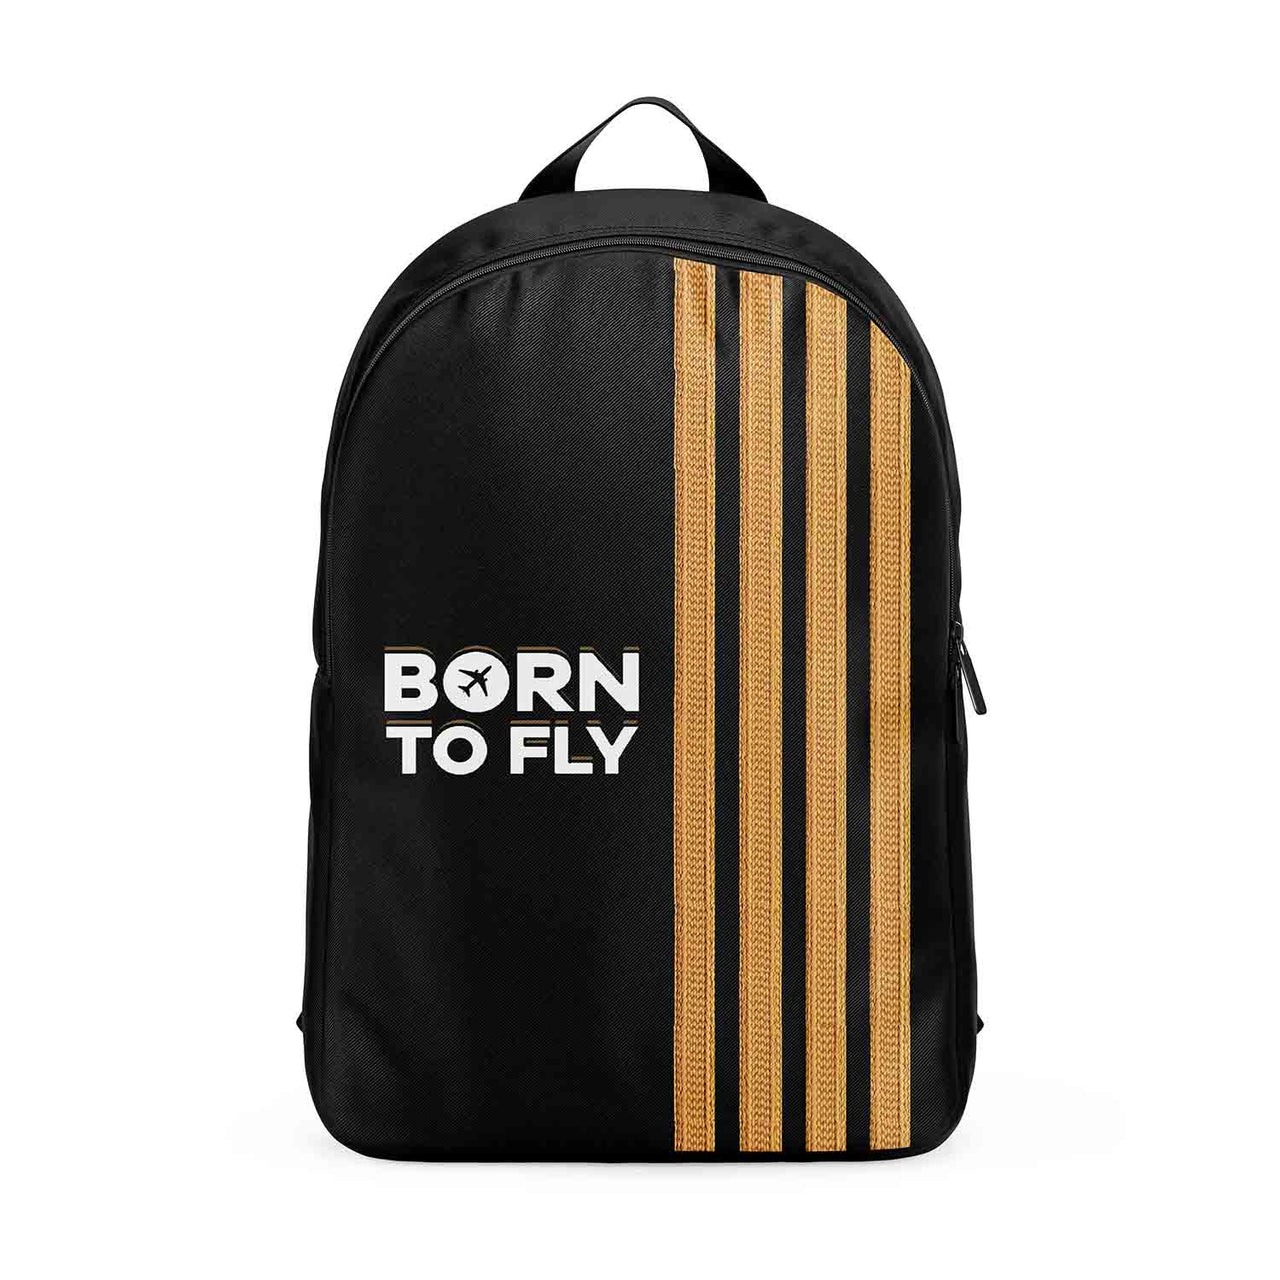 Born To Fly & Pilot Epaulettes (4 Lines) Designed Backpacks